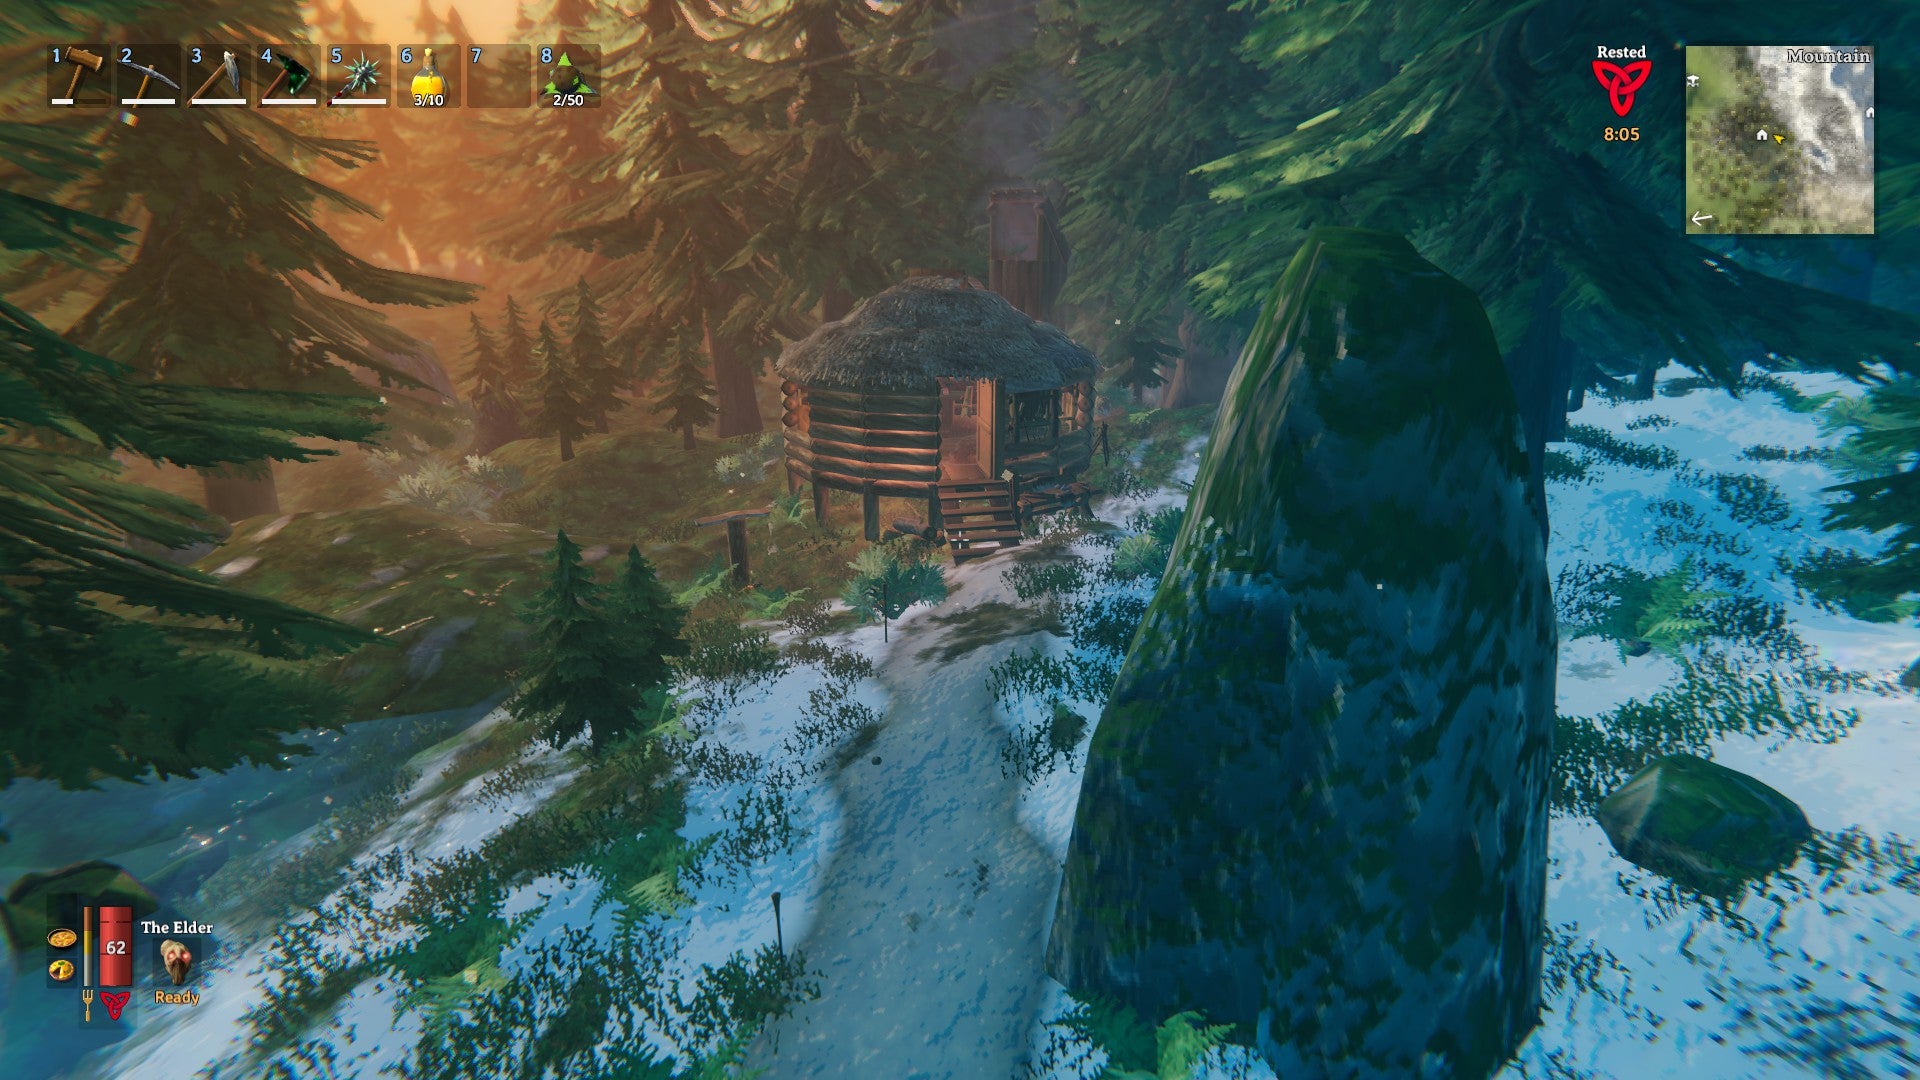 Hagrid’s hut was also lovingly recreated in “Valheim.”